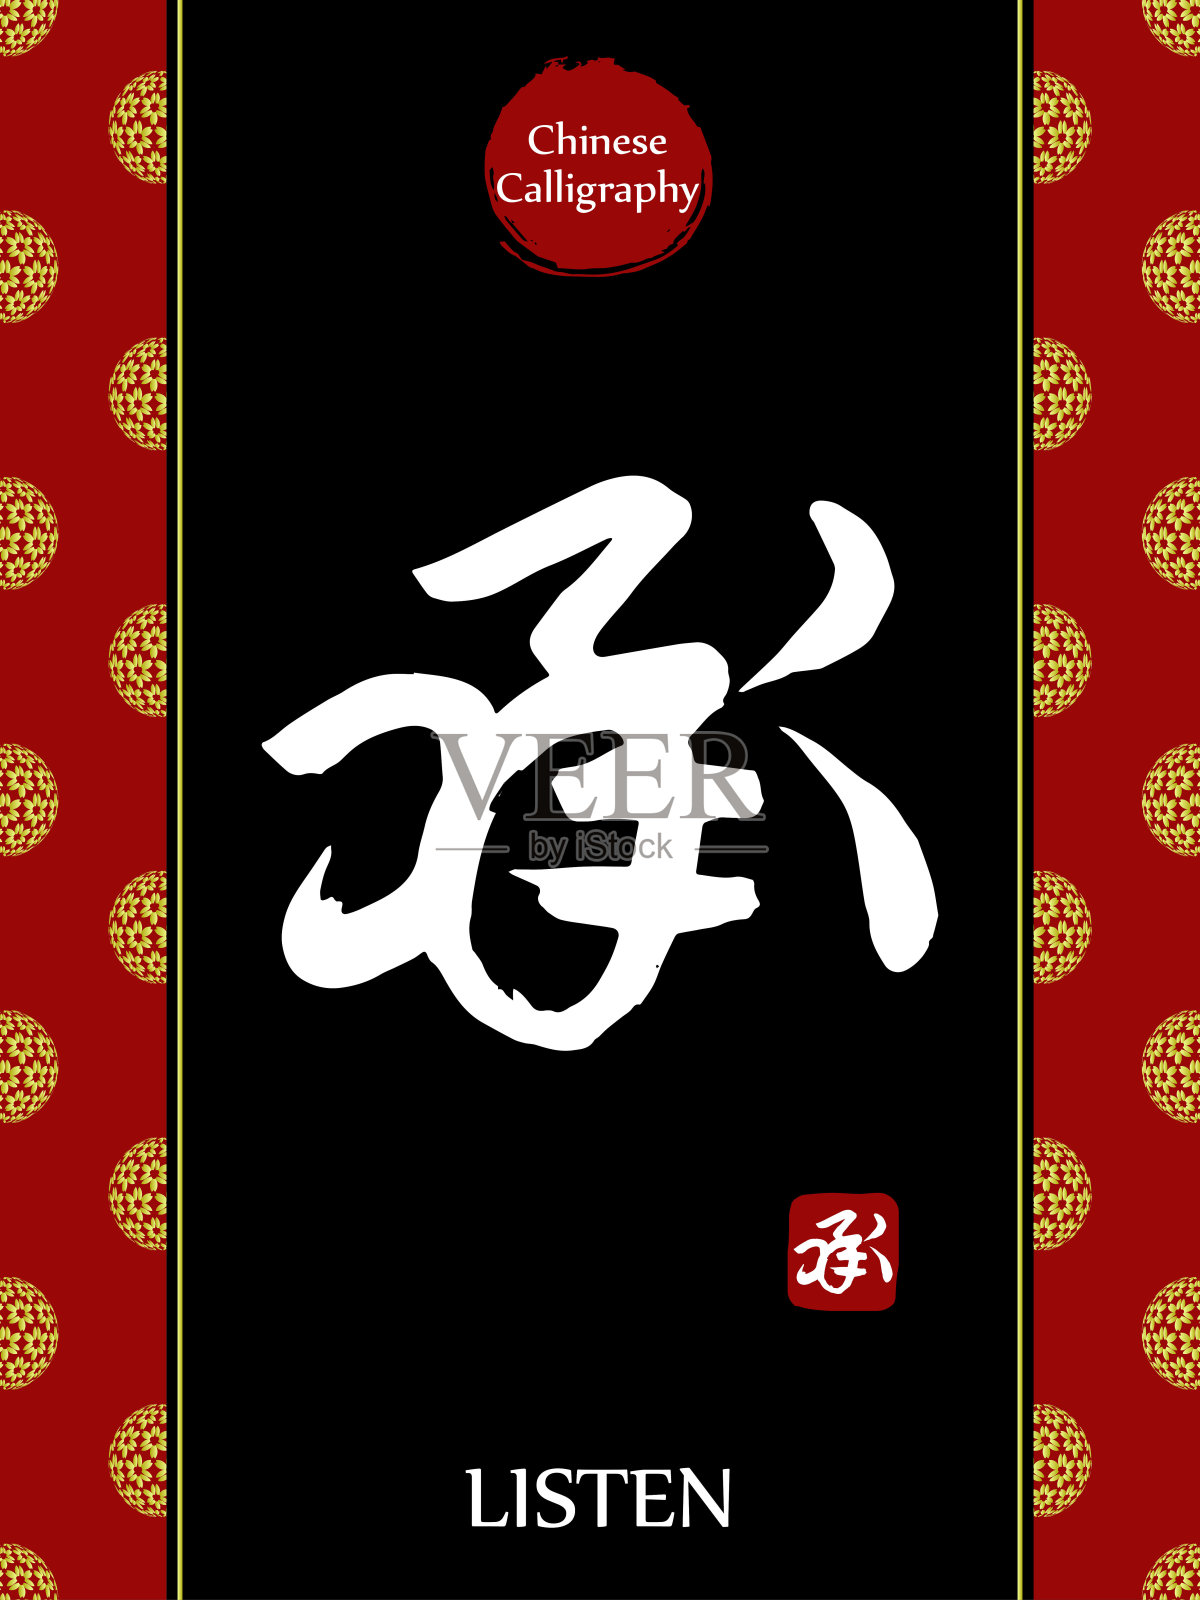 中国书法象形文字翻译:听。亚洲金花球农历新年图案。向量中国符号在黑色背景。手绘图画文字。毛笔书法插画图片素材